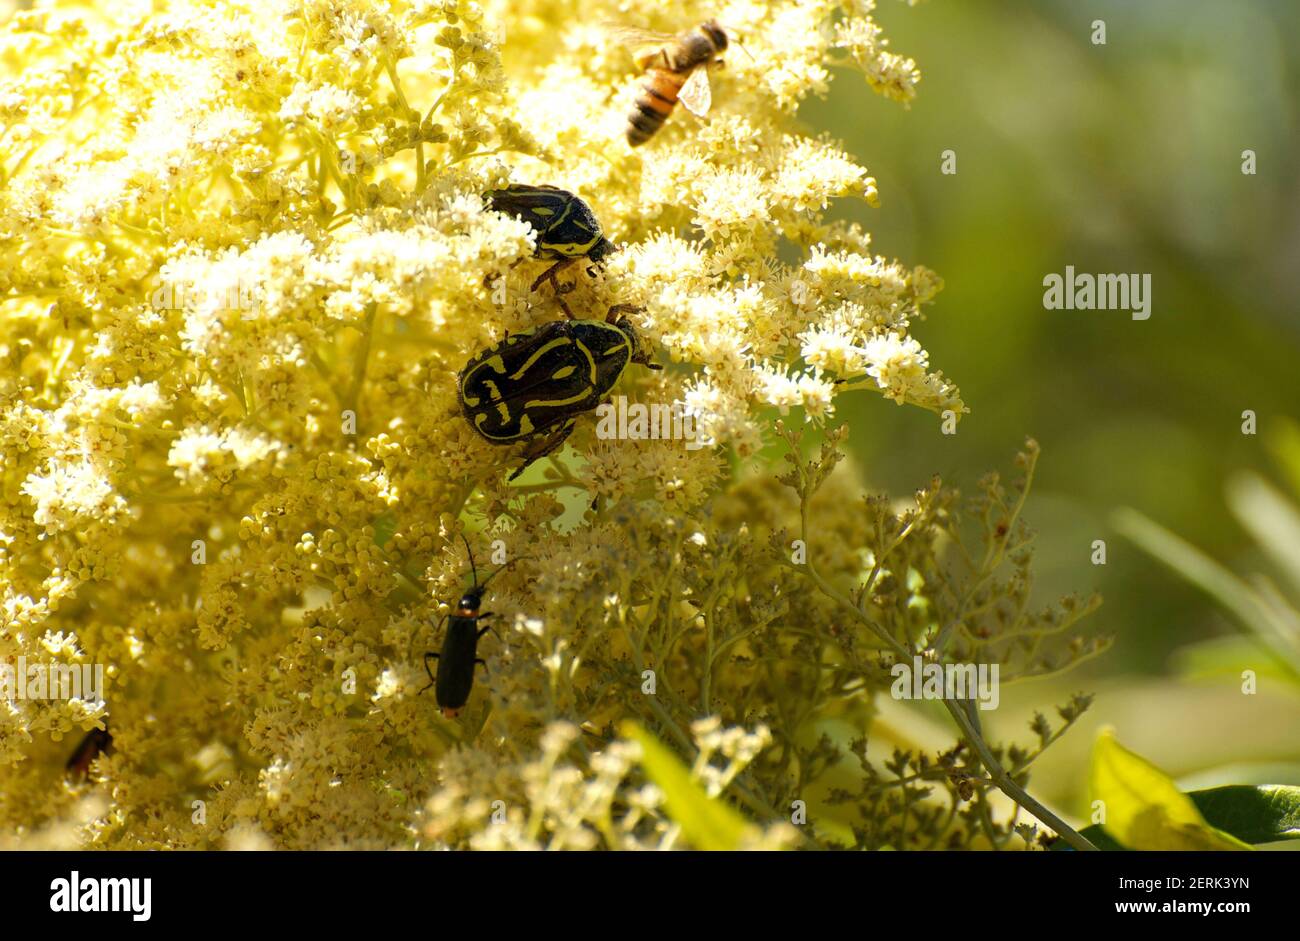 Beetle Mania - questo cespuglio fiorito deve avere un nettare molto speciale - stava attirando un sacco di scarabei, tra cui questi grandi Enteles Vigorsi. Foto Stock